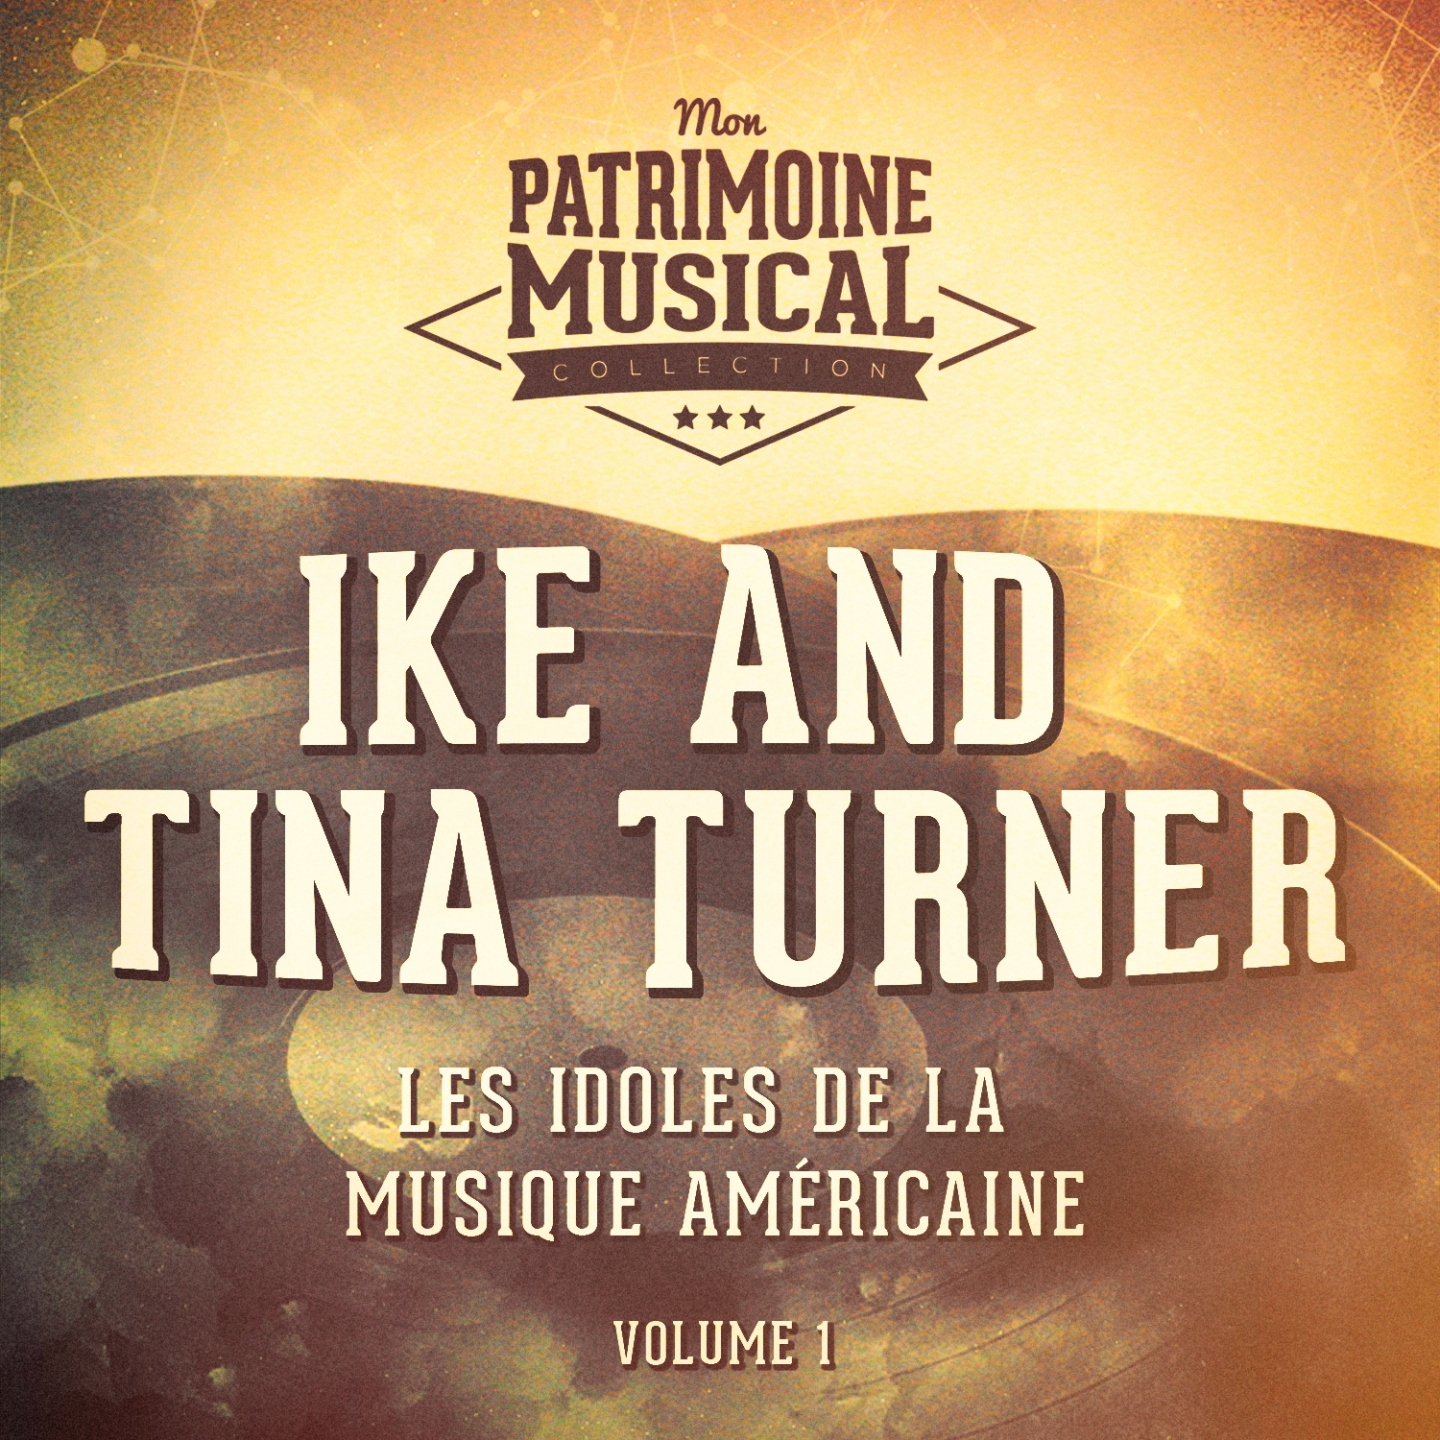 Les Idoles De La Musique Américaine: Ike and Tina Turner, Vol. 1